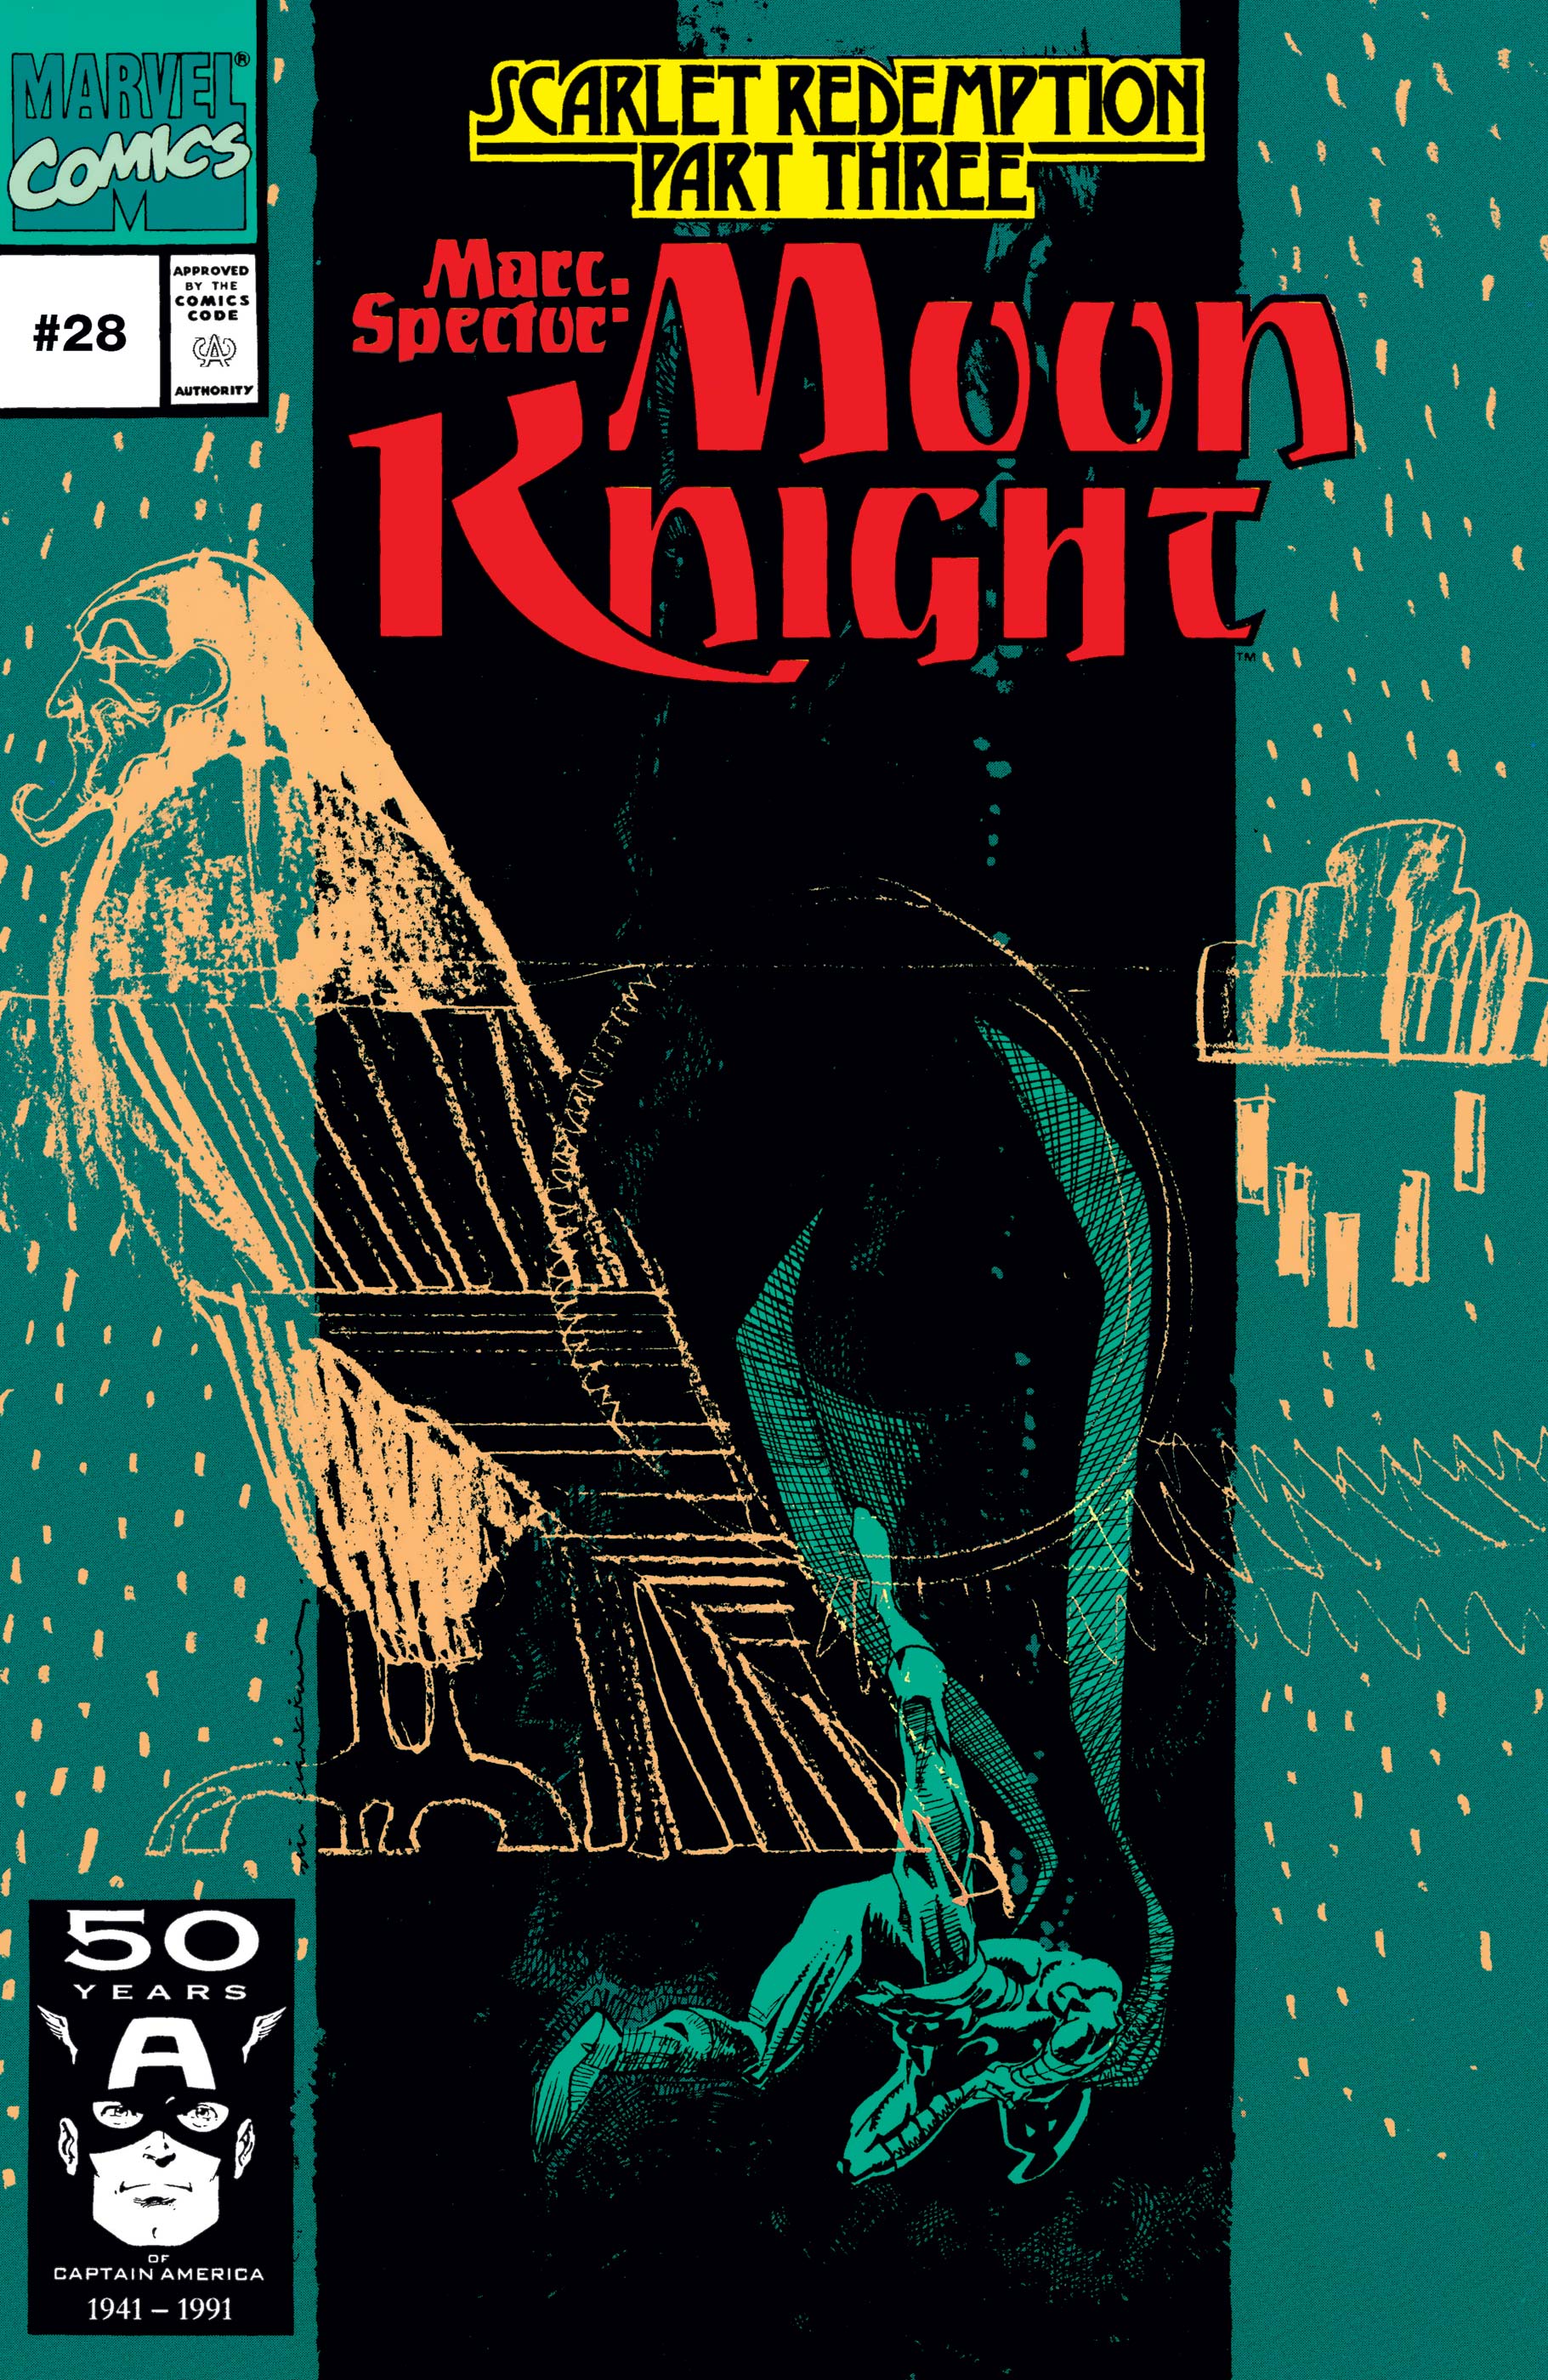 Marc Spector: Moon Knight (1989) #28